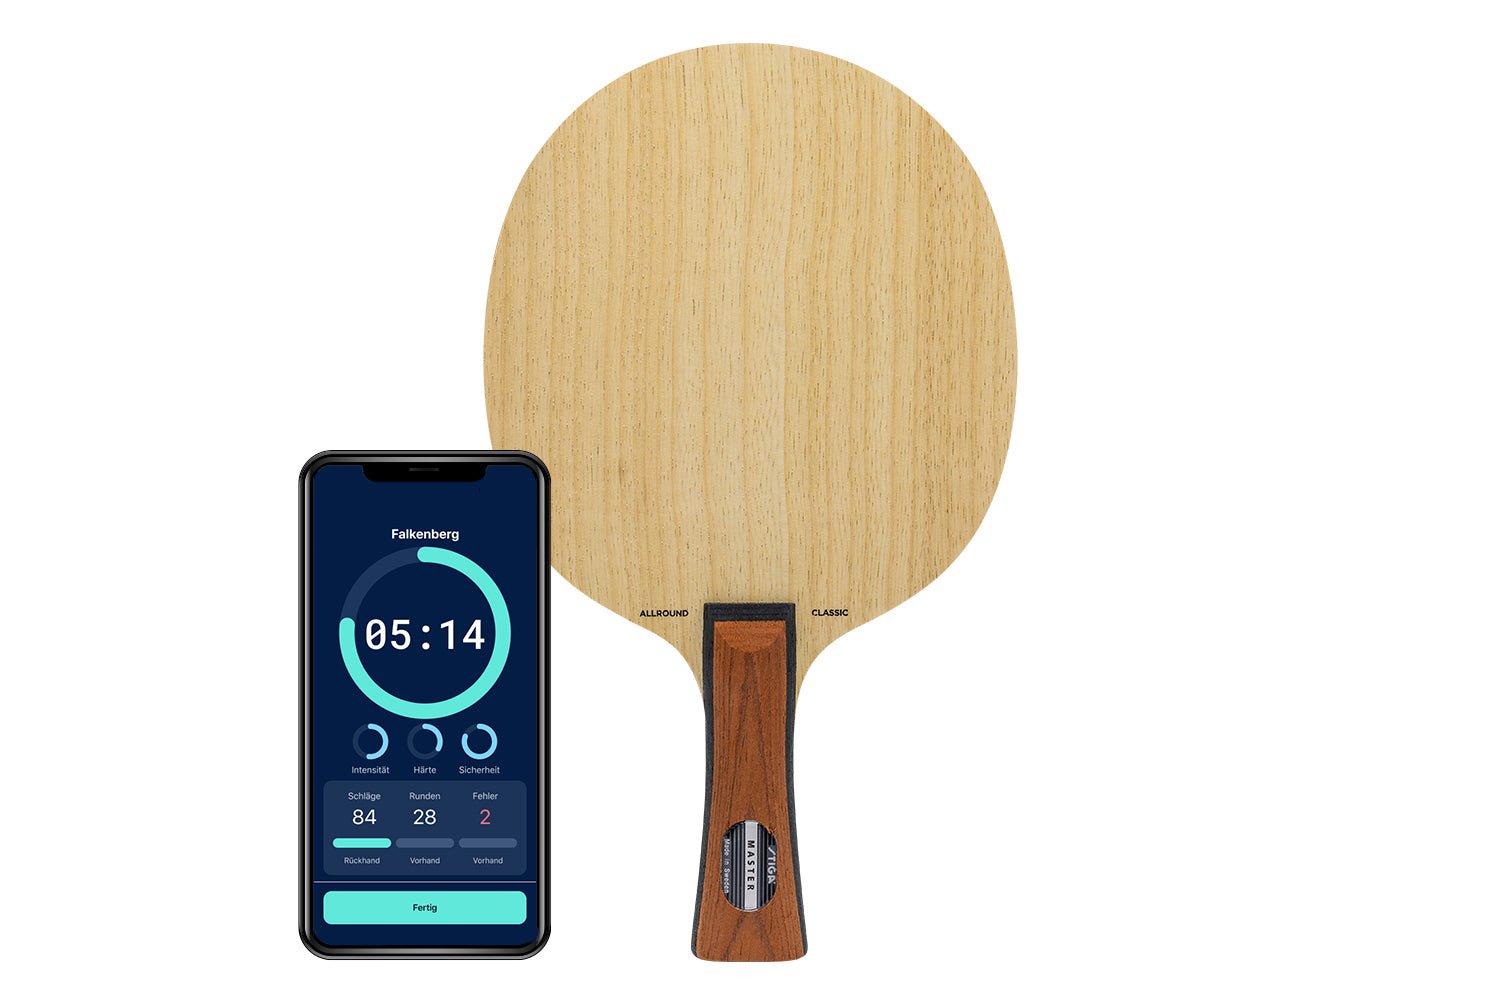 Stiga Allround Classic Tischtennisschläger mit konkaven Griff und Smartphone zeigt Daten des Schlägers vor weißem Hintergrund